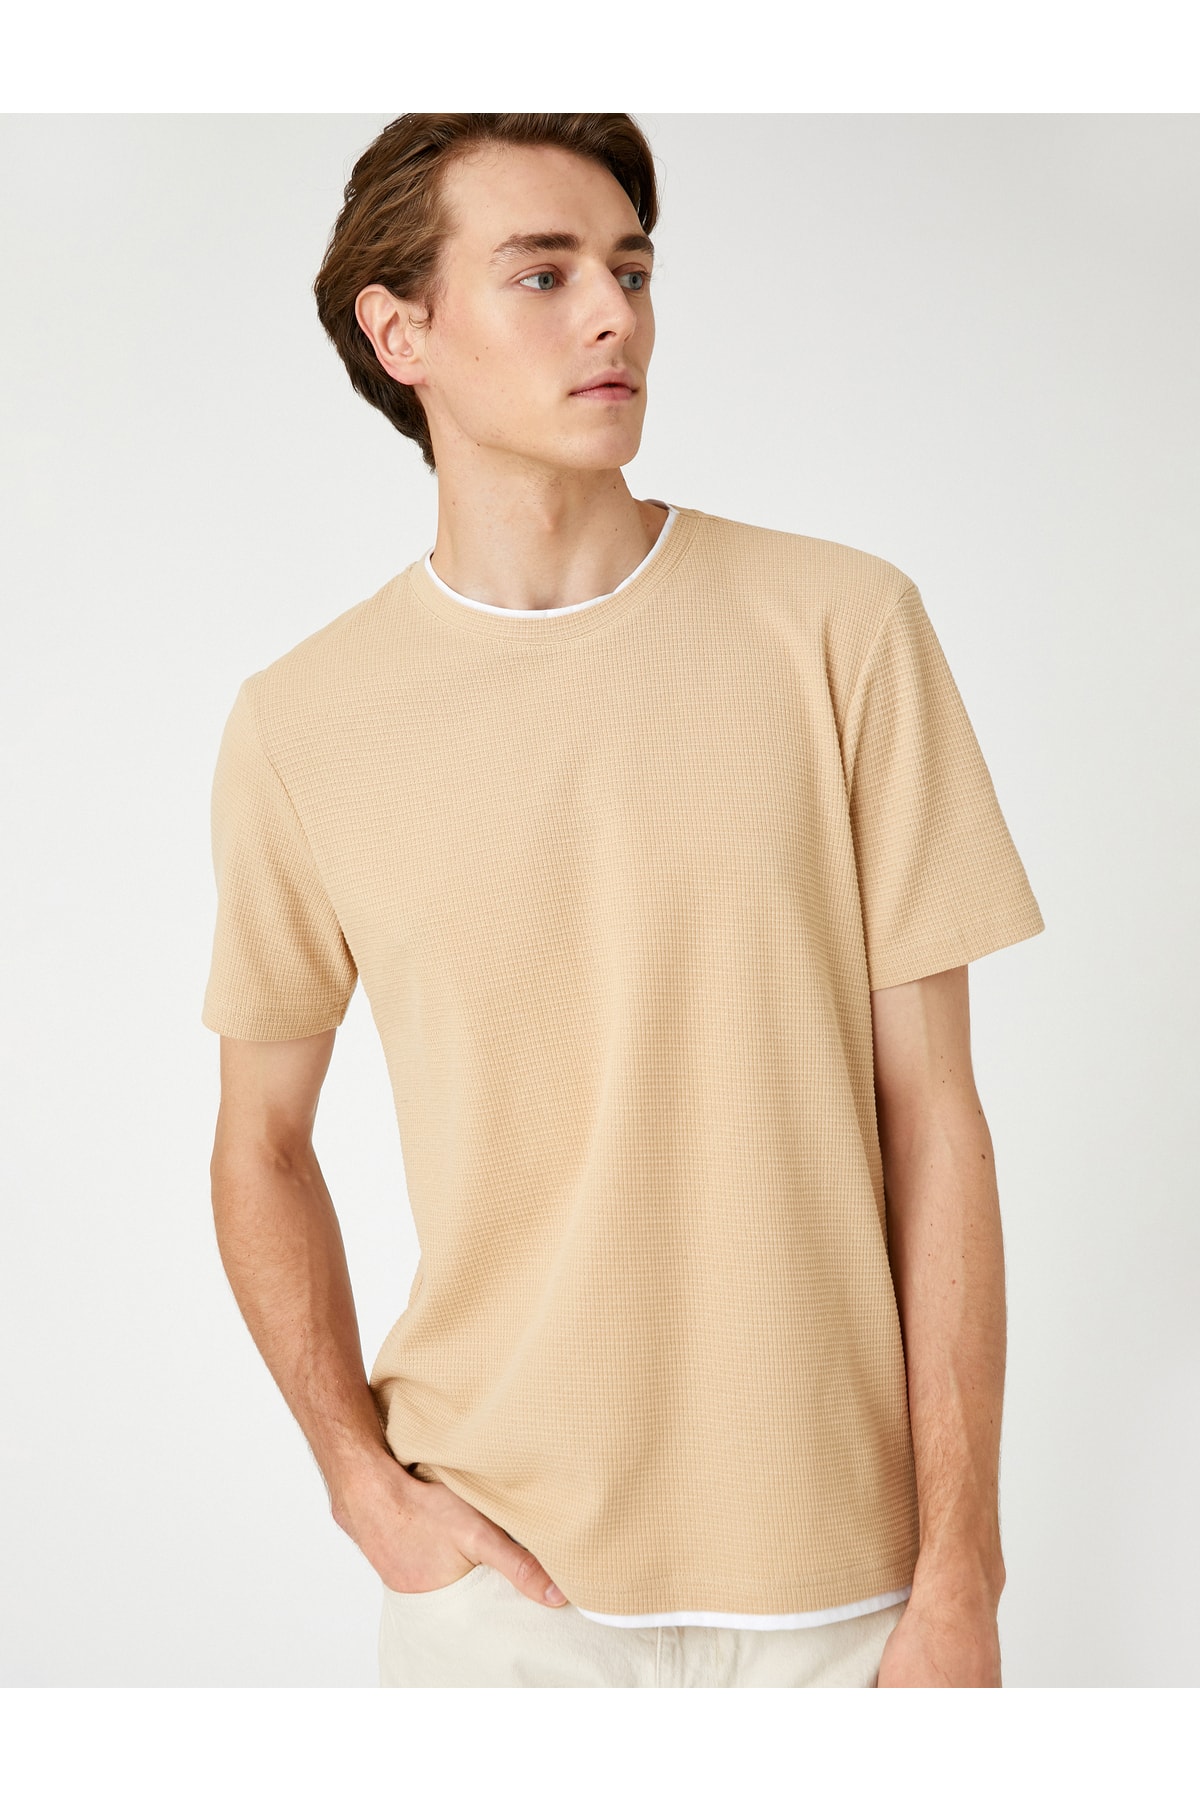 Koton Basic tkané tričko s krátkym rukávom s výstrihom posádky, Slim Fit.